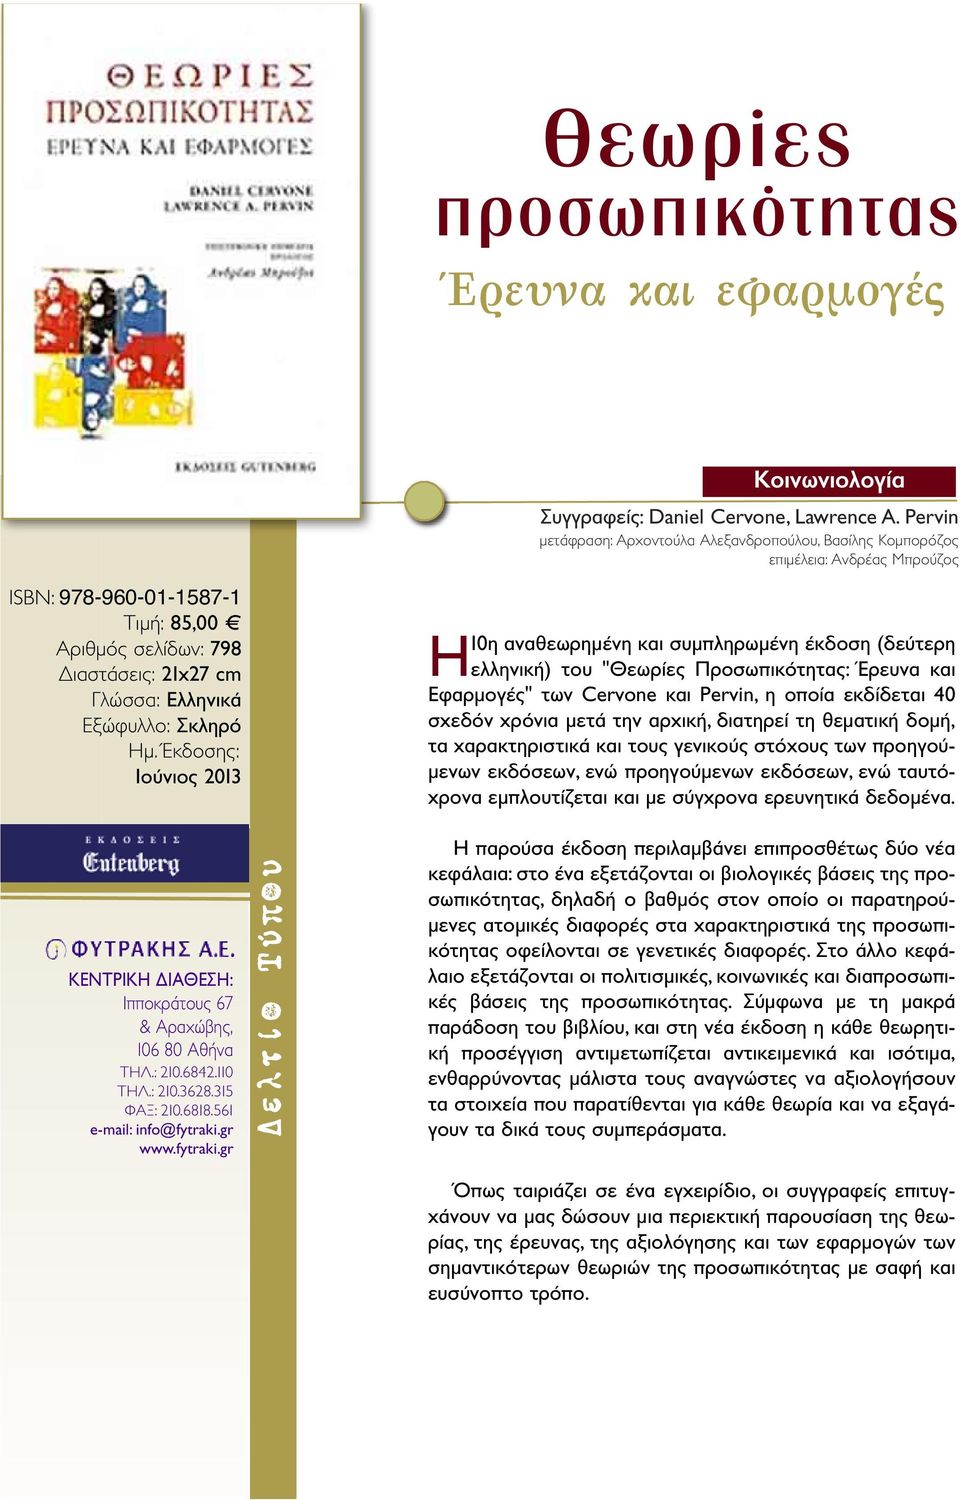 Ημ. Έκδοσης: Ιούνιος 2013 Η10η αναθεωρημένη και συμπληρωμένη έκδοση (δεύτερη ελληνική) του "Θεωρίες Προσωπικότητας: Έρευνα και Εφαρμογές" των Cervone και Pervin, η οποία εκδίδεται 40 σχεδόν χρόνια